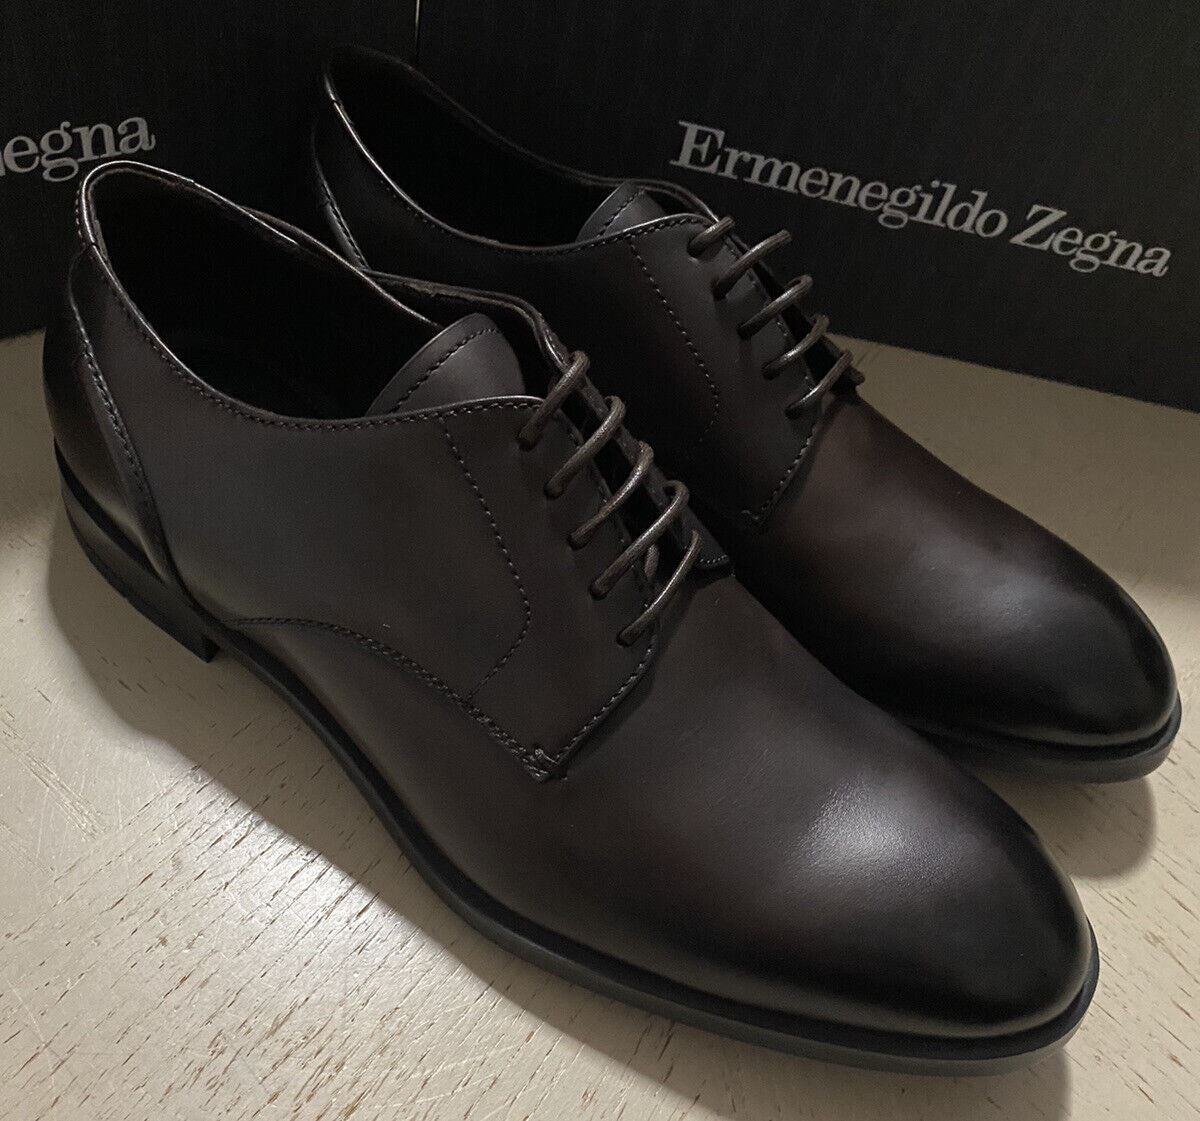 Новые модельные туфли Ermenegildo Zegna, MD Brown 11, США (44 ЕС), Италия, 675 долларов США.